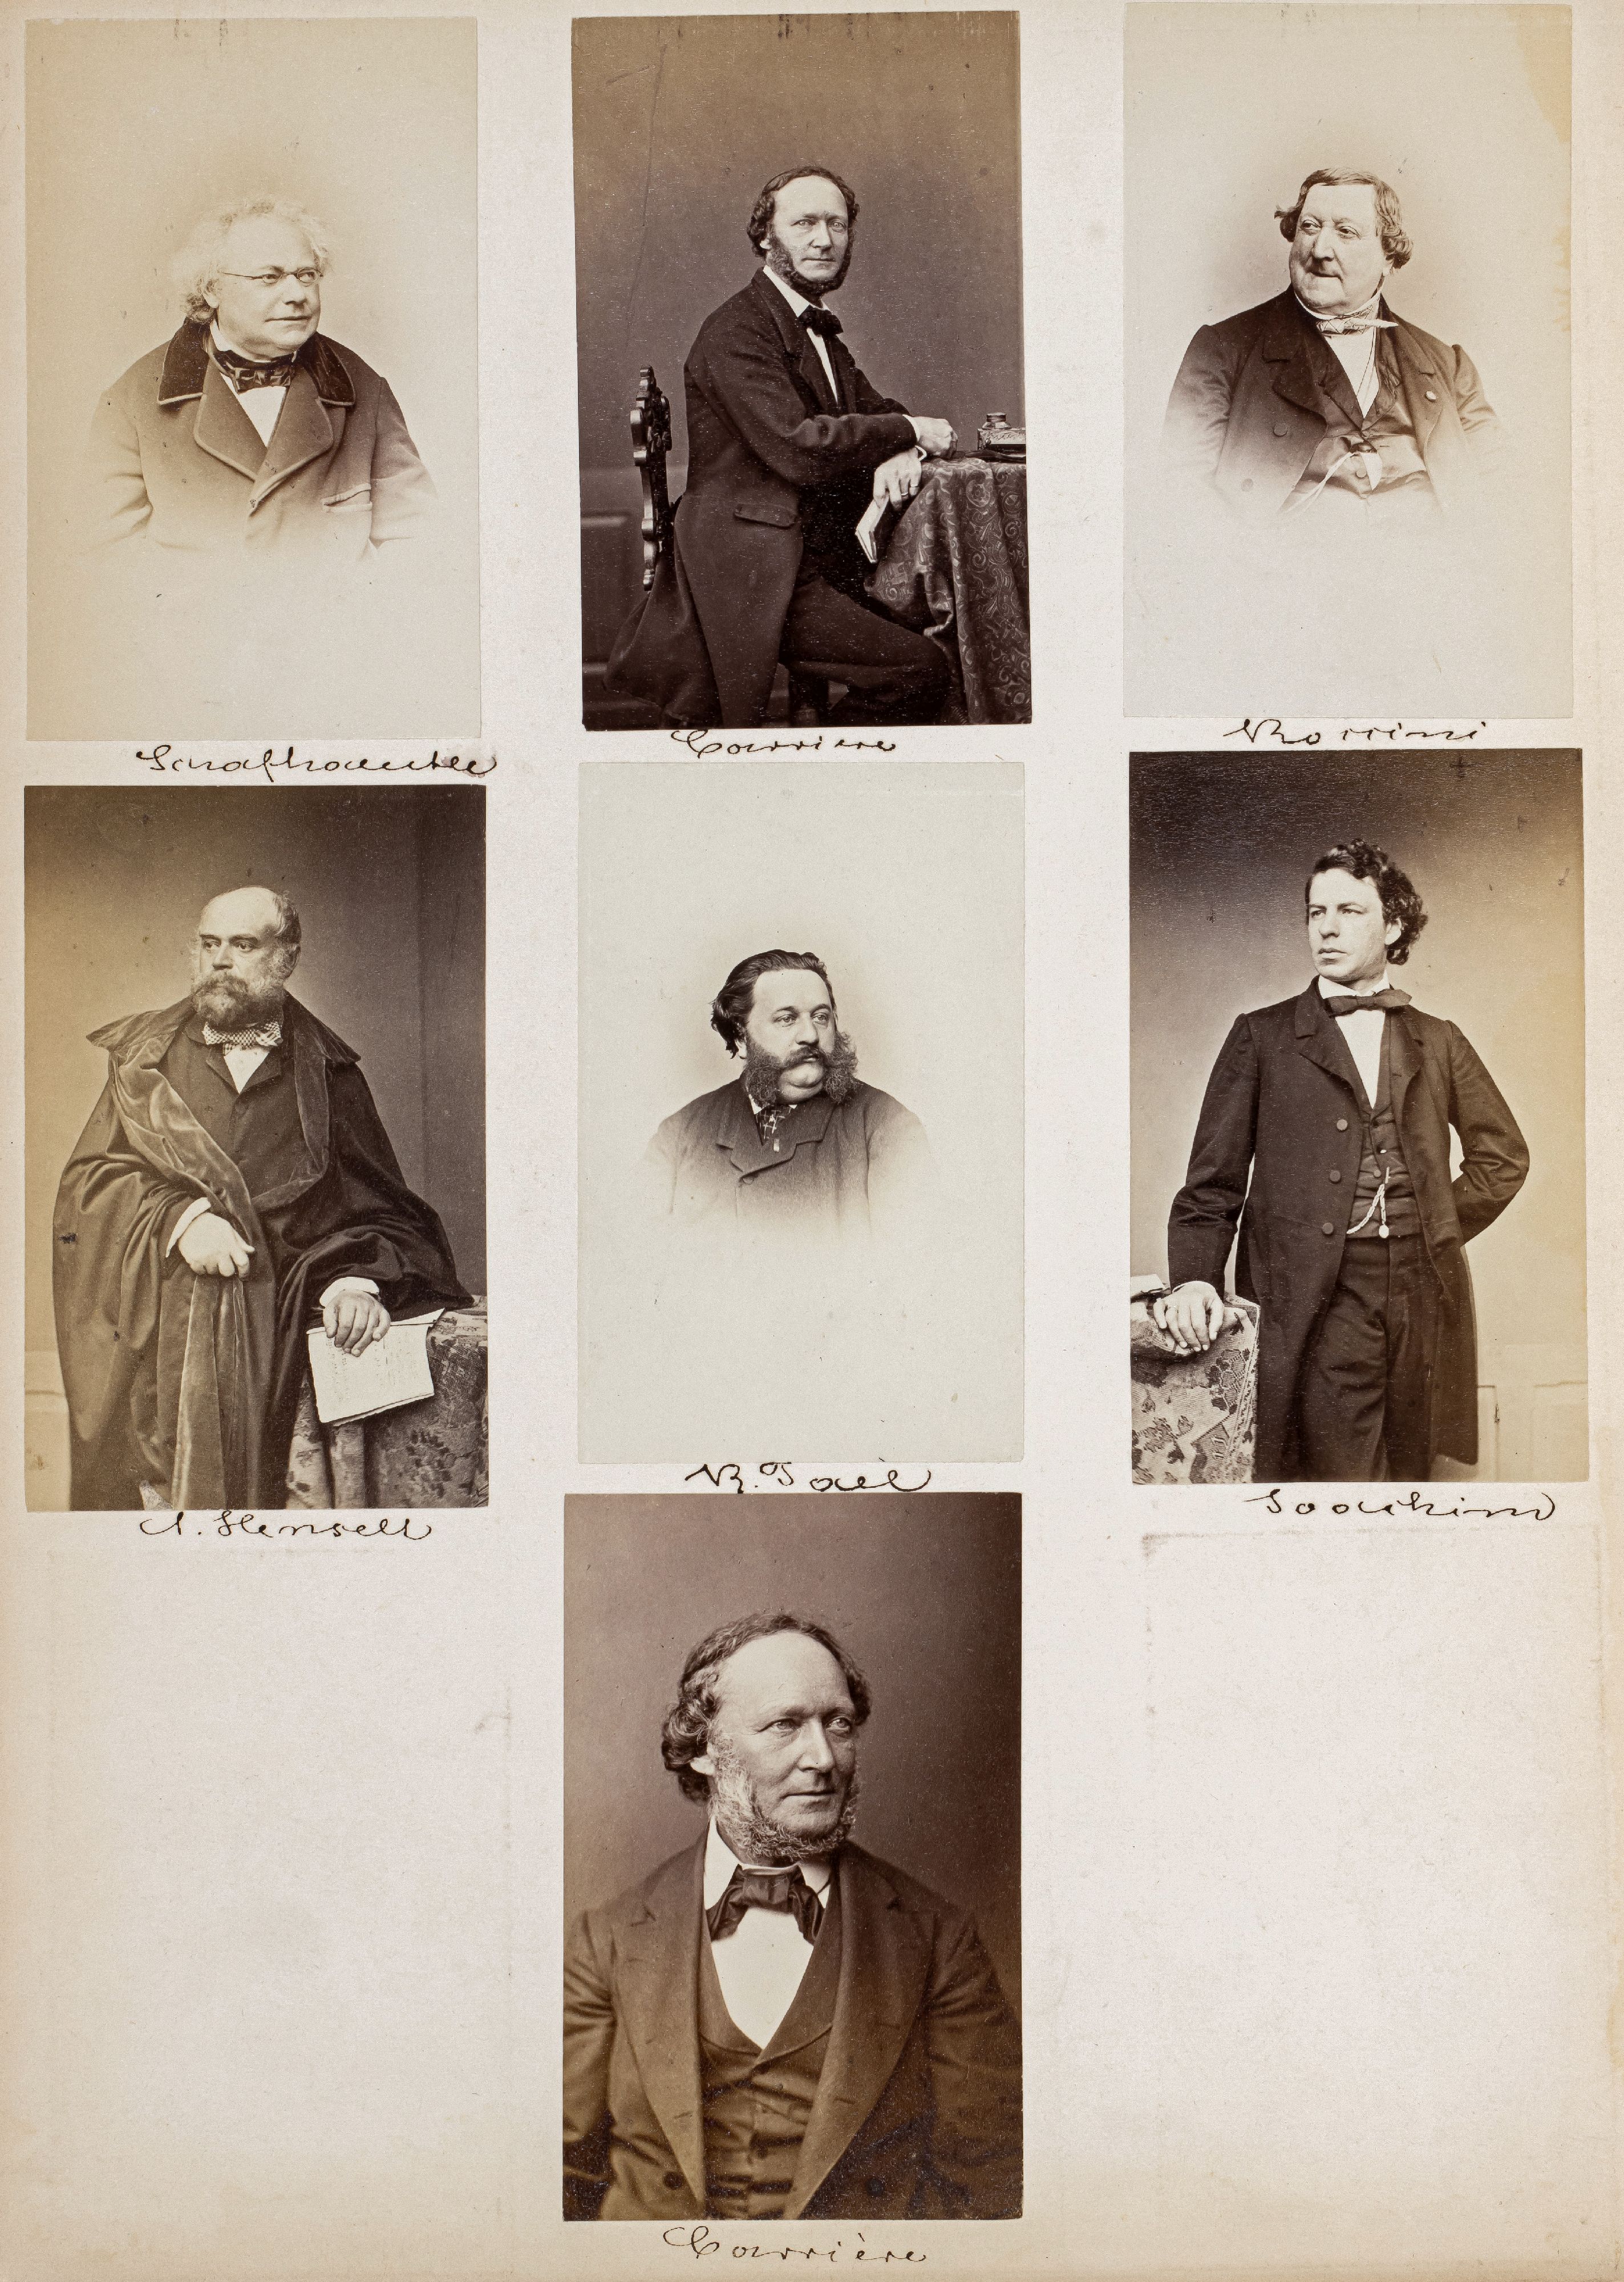 FOTOGRAFIE | Hanfstaengl, Franz | 1807 Baiernrain bei Tölz - 1877 München - Bild 21 aus 25